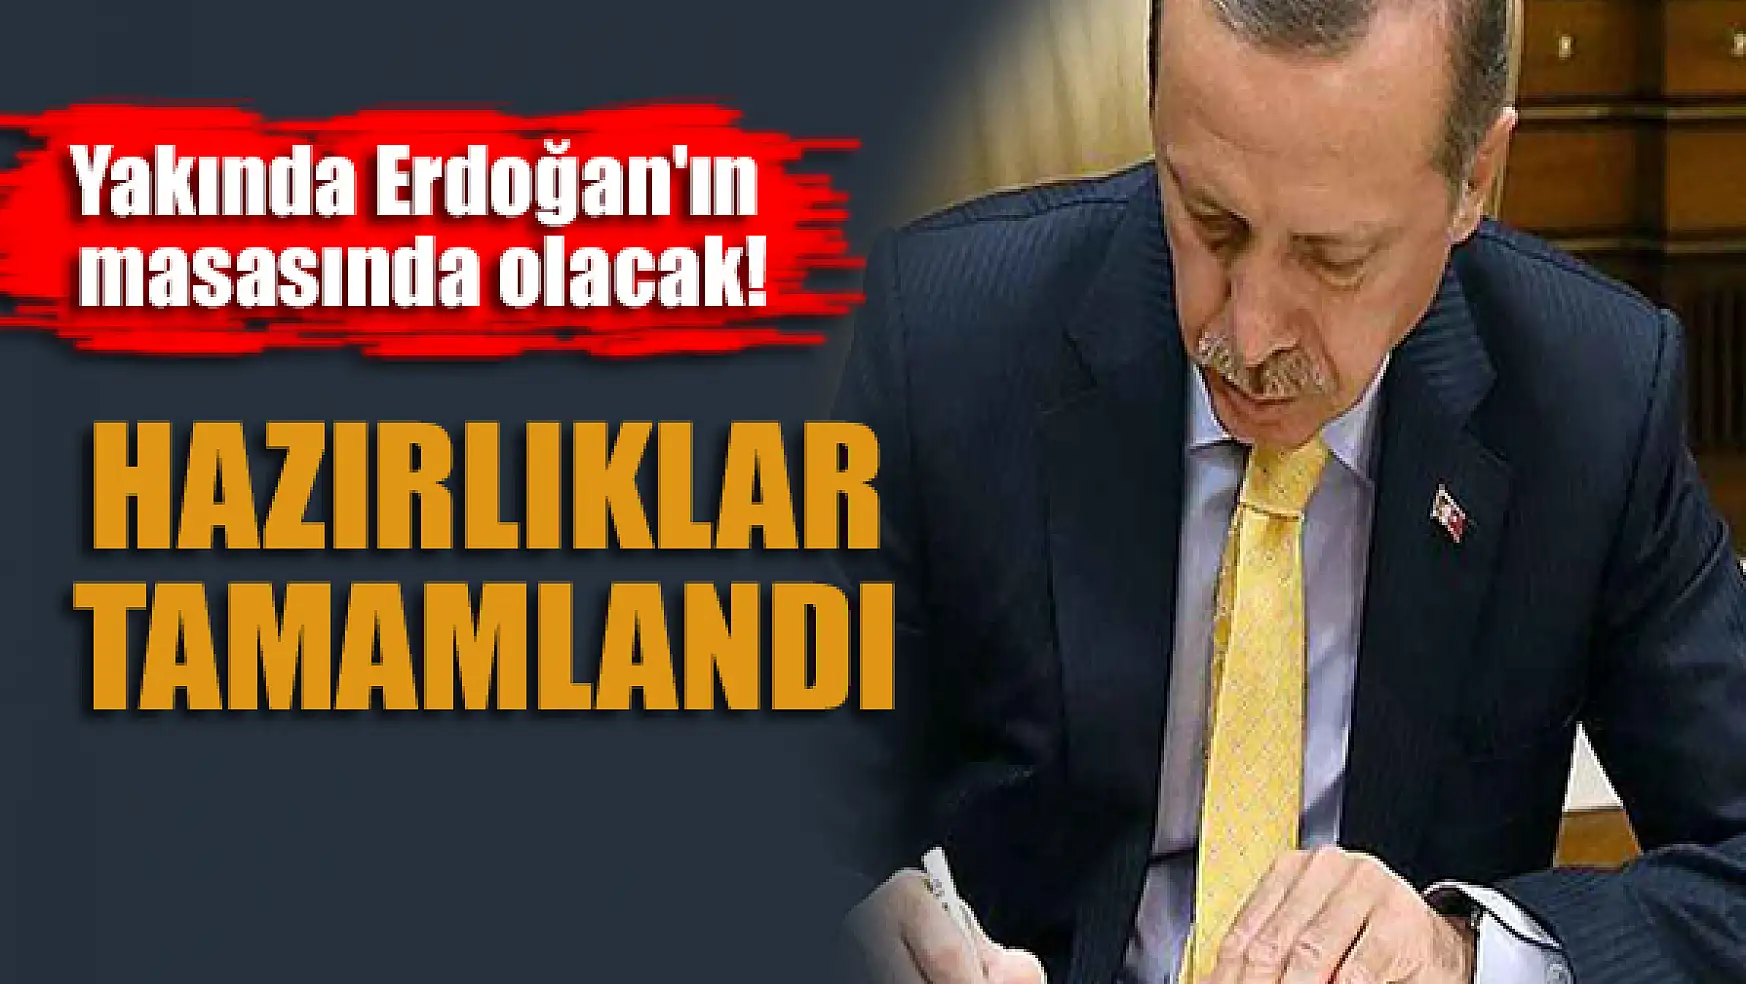 Hazırlıklar tamamlandı! Yakında Erdoğan'ın masasında olacak!